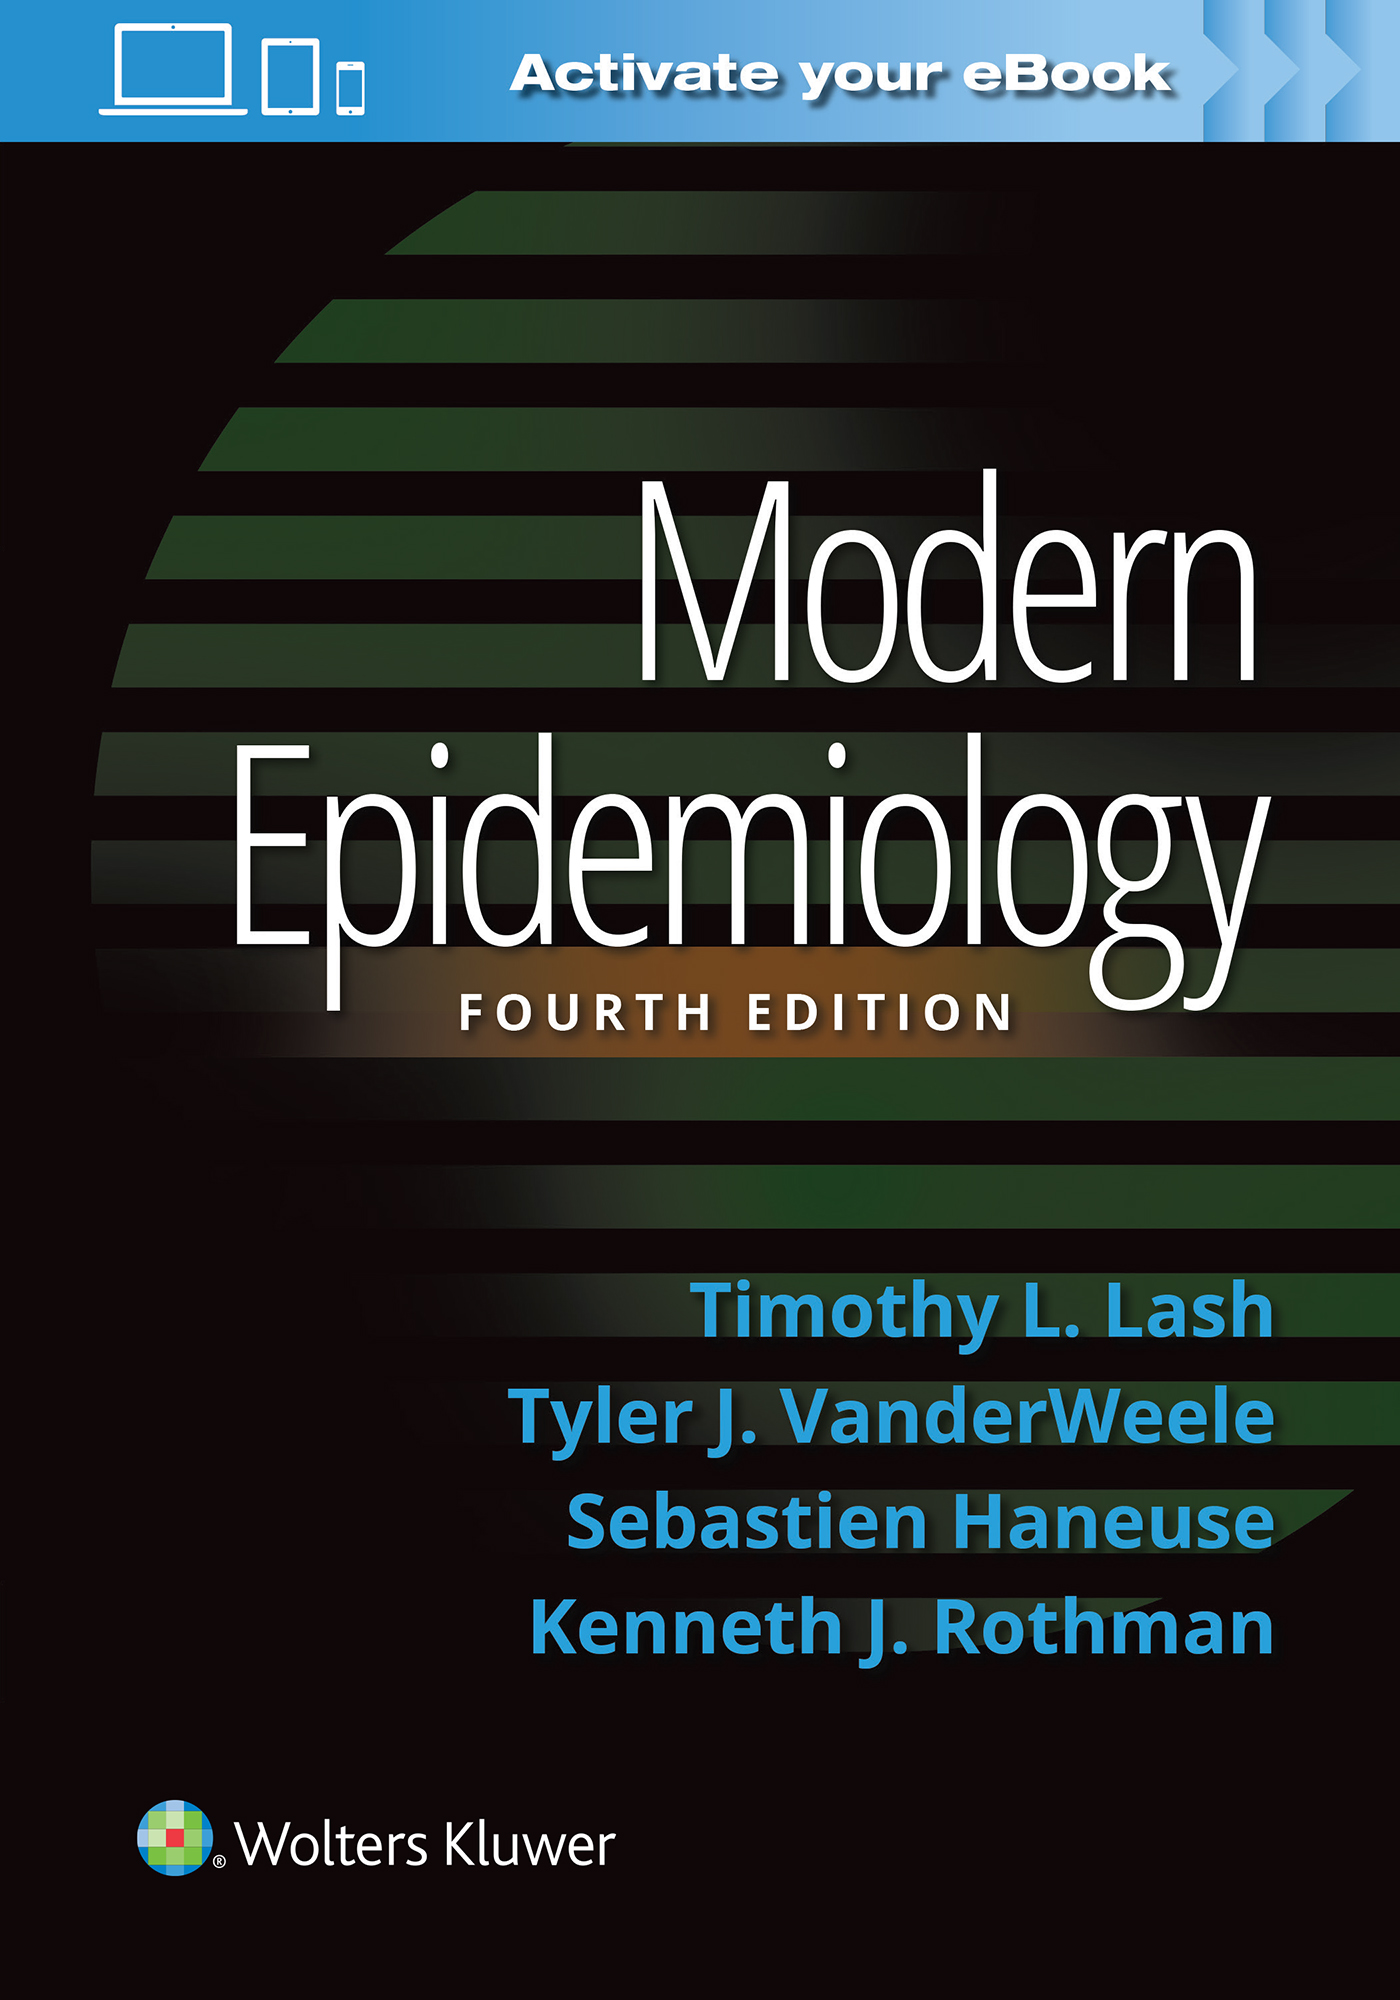 ISBN: 9781451193282 MODERN EPIDEMIOLOGY